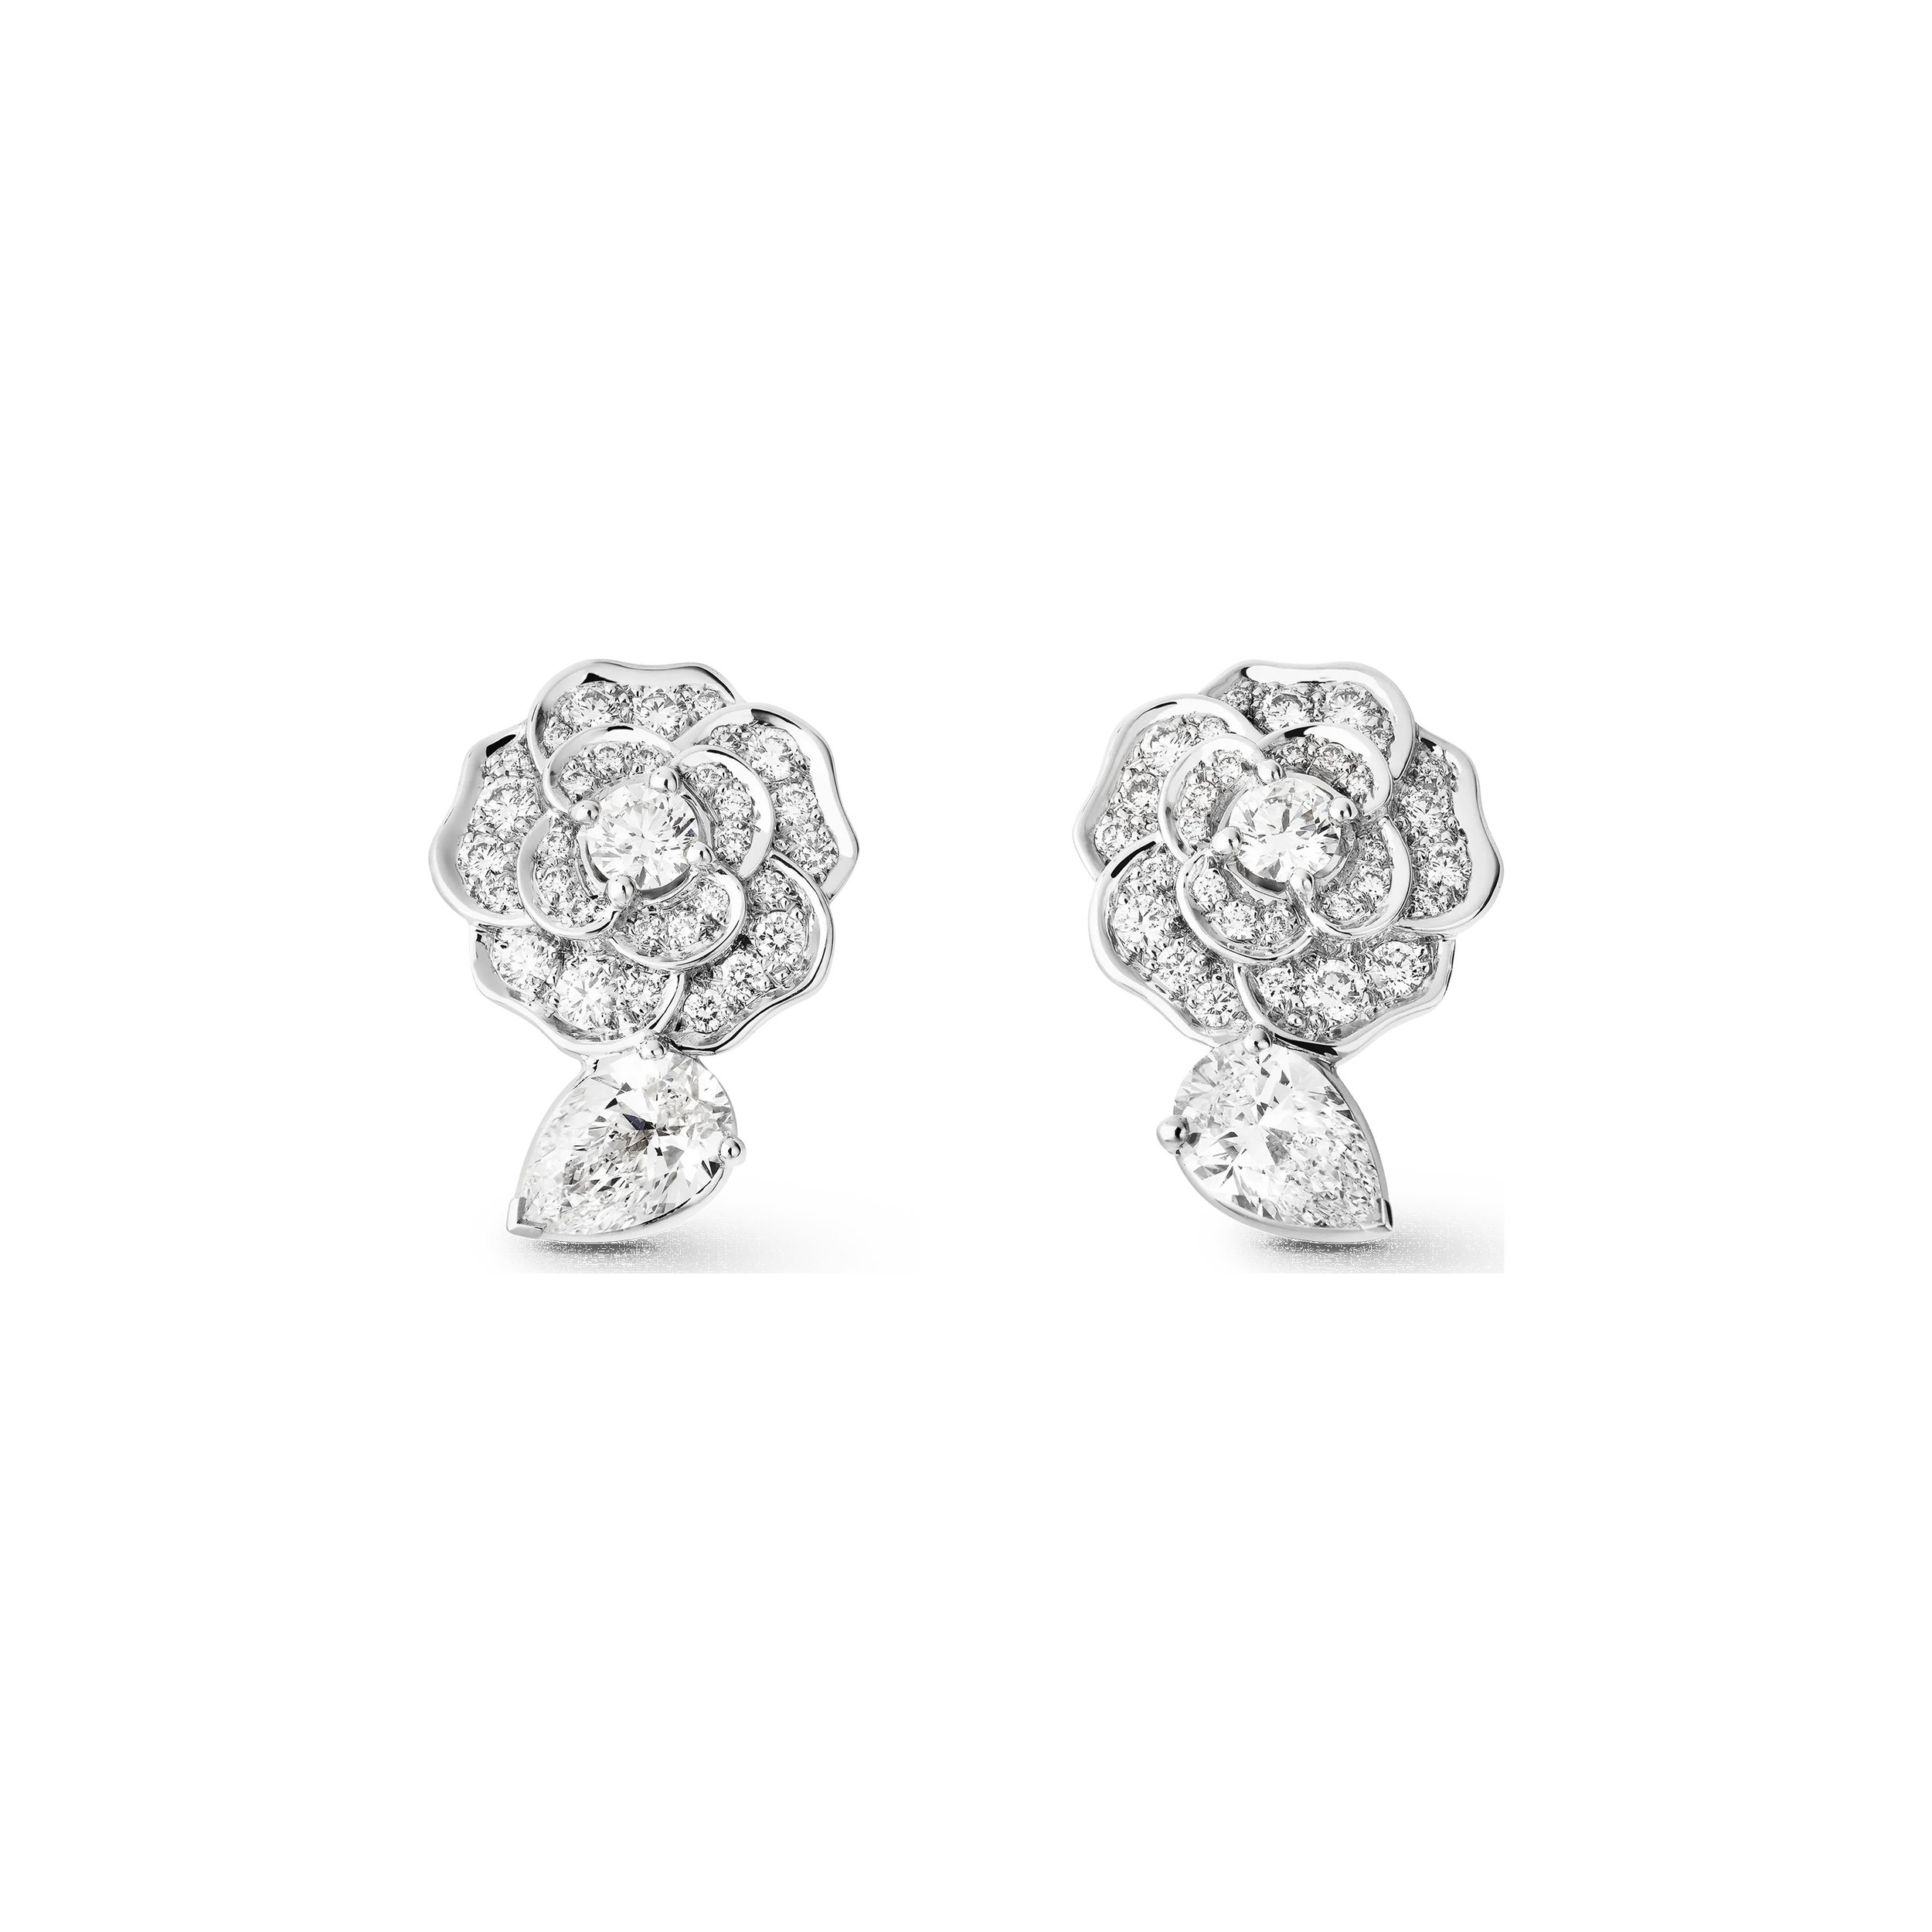 Chanel Camélia Précieux Earrings in 18K White Gold Diamonds.jpg